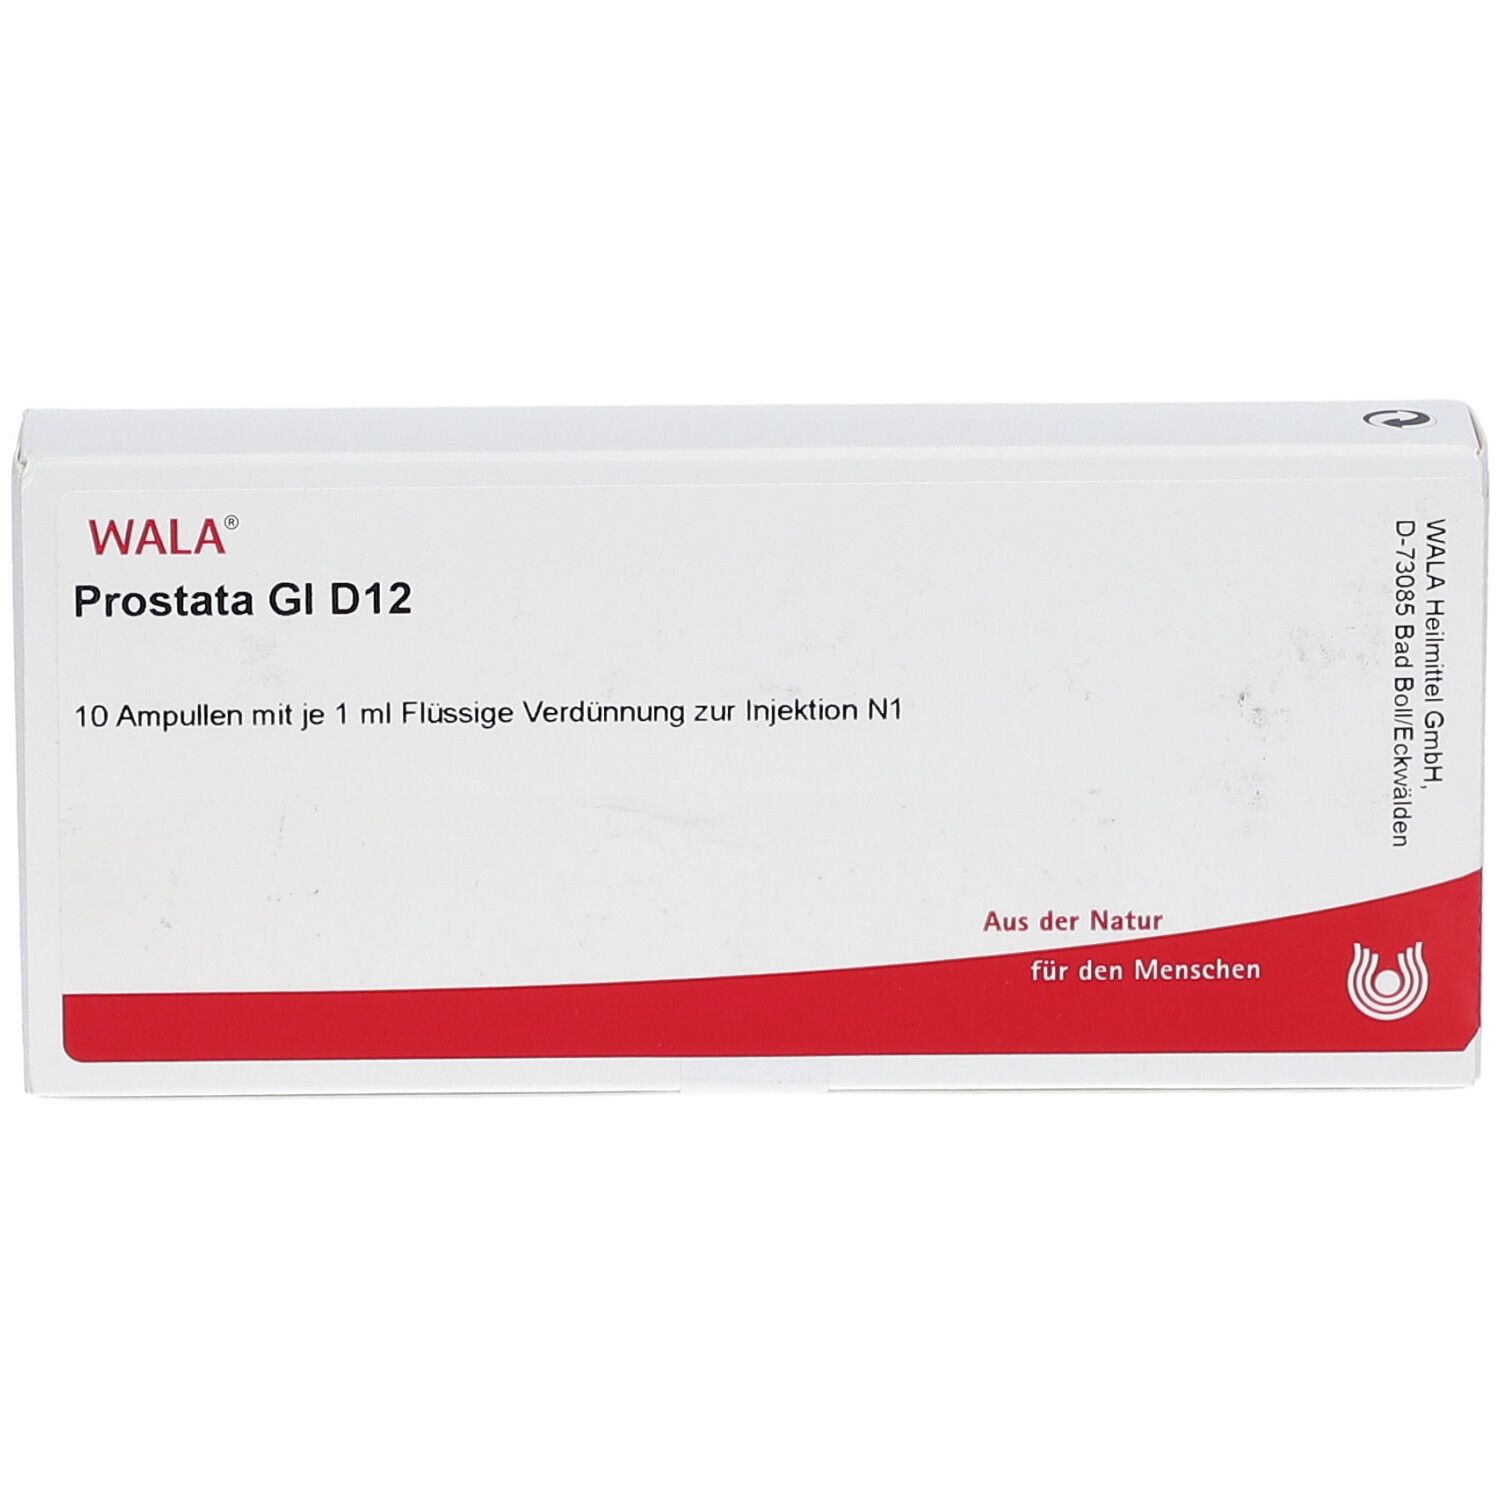 Wala® Prostata Gl D 12